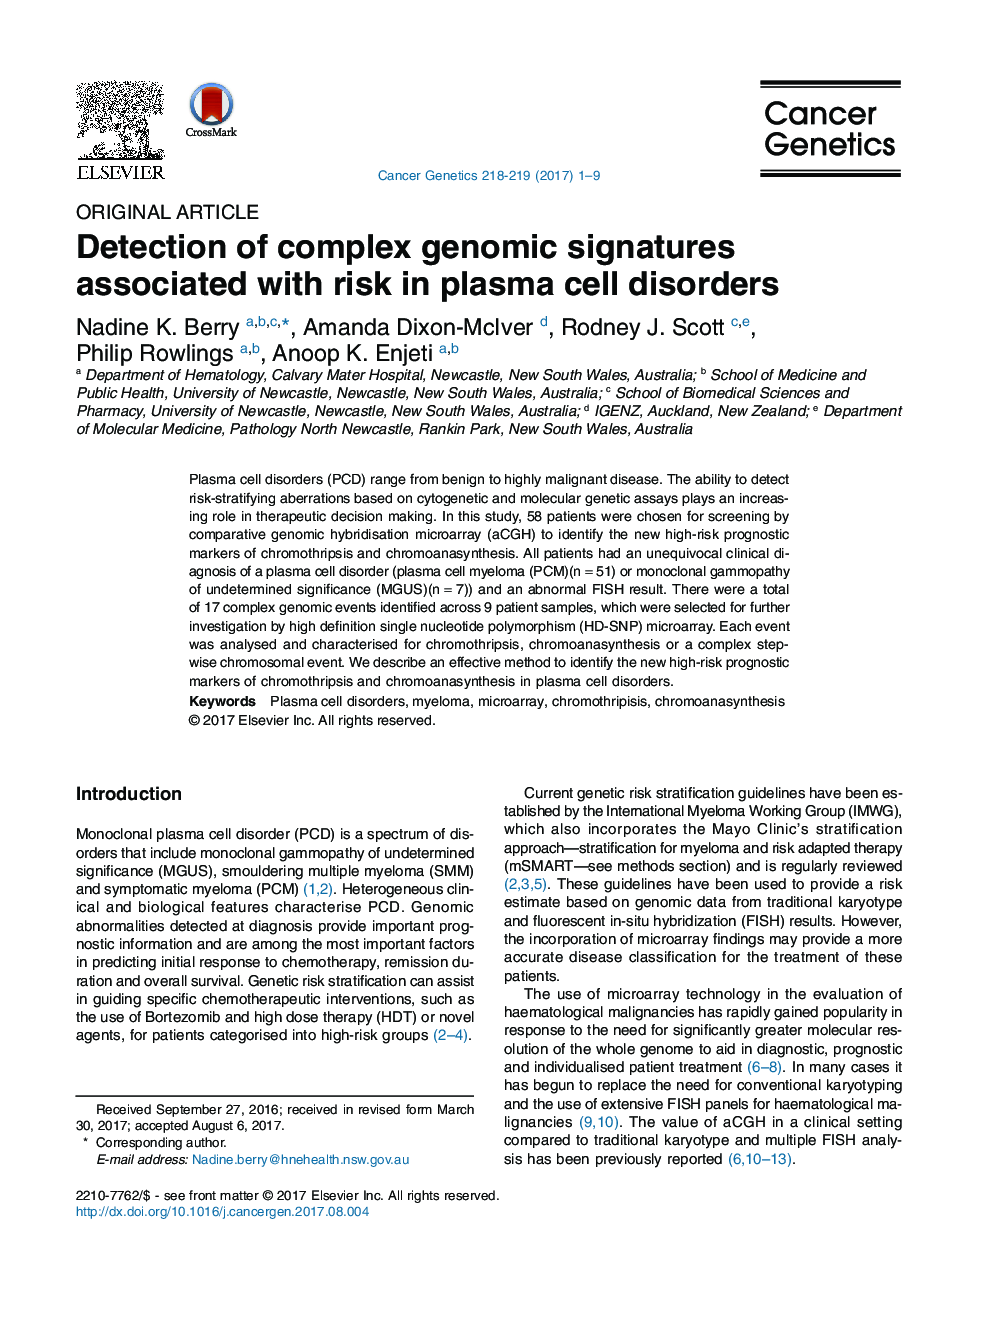 تشخیص امواج پیچیده ژنومی مرتبط با خطر در اختلالات سلولی پلاسما 